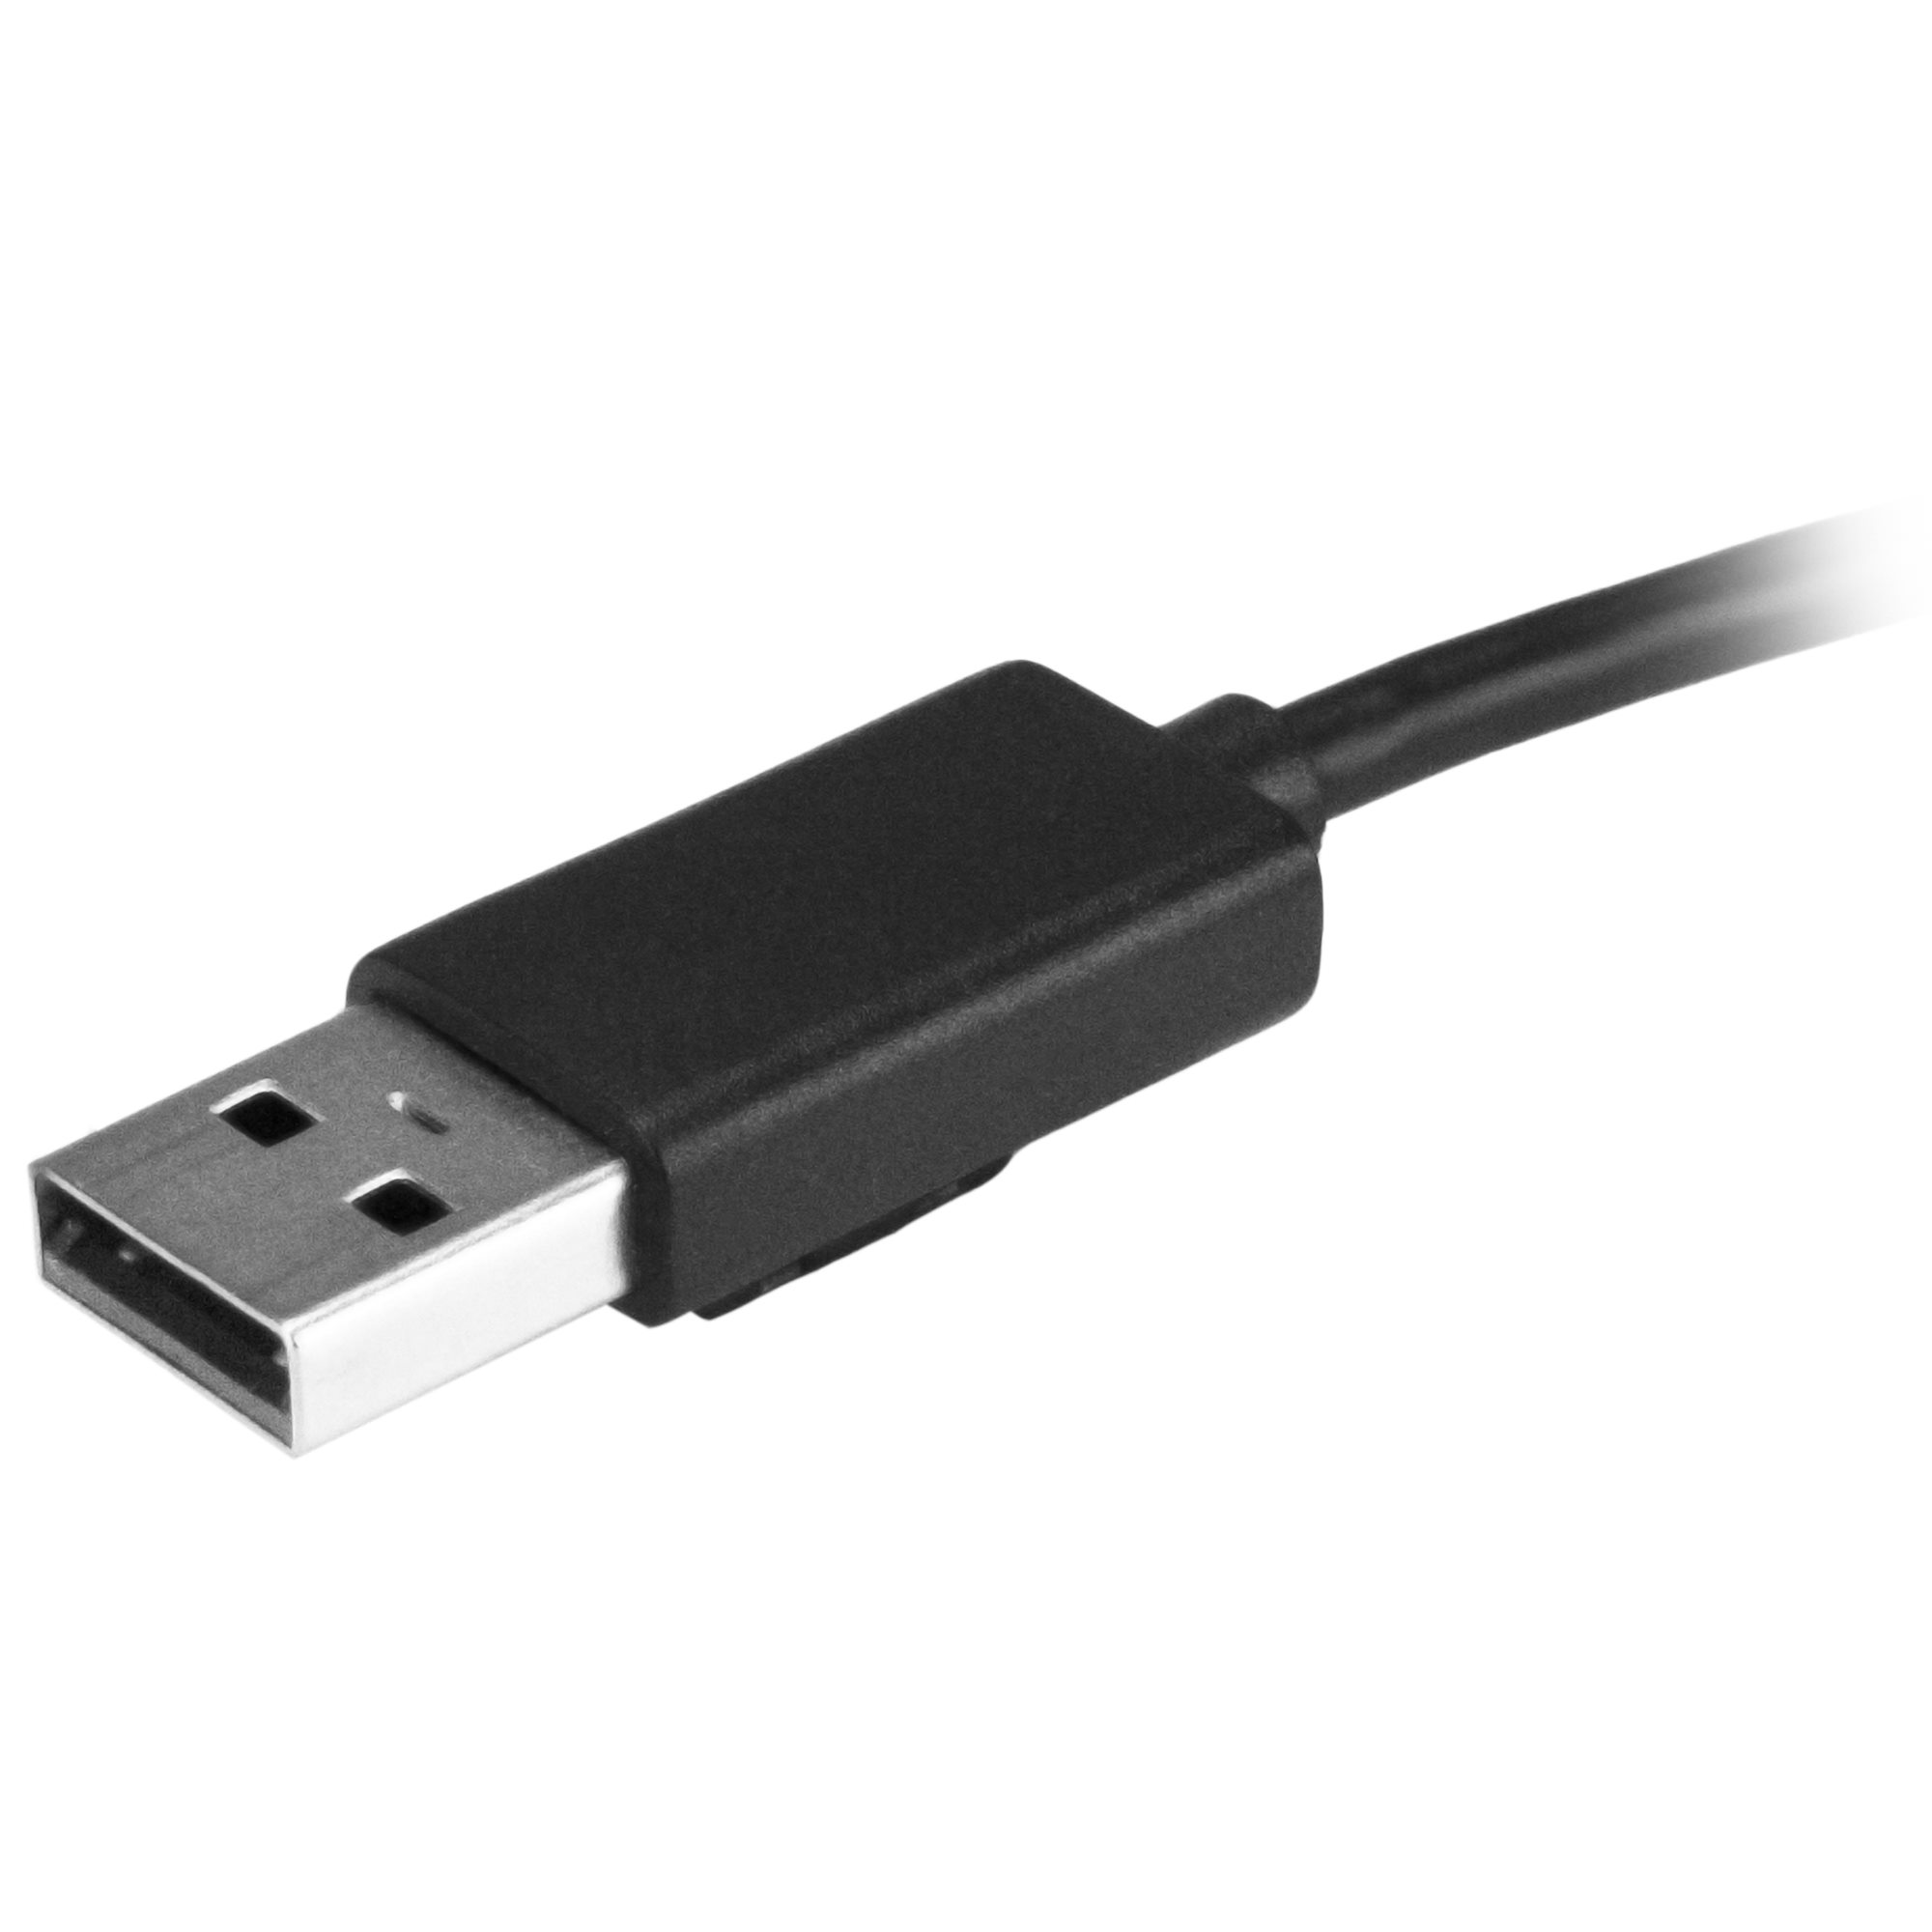 Ladrón Hub USB 2.0 de Datos con 7 Puertos Interruptores LEDs Individua –  OcioDual